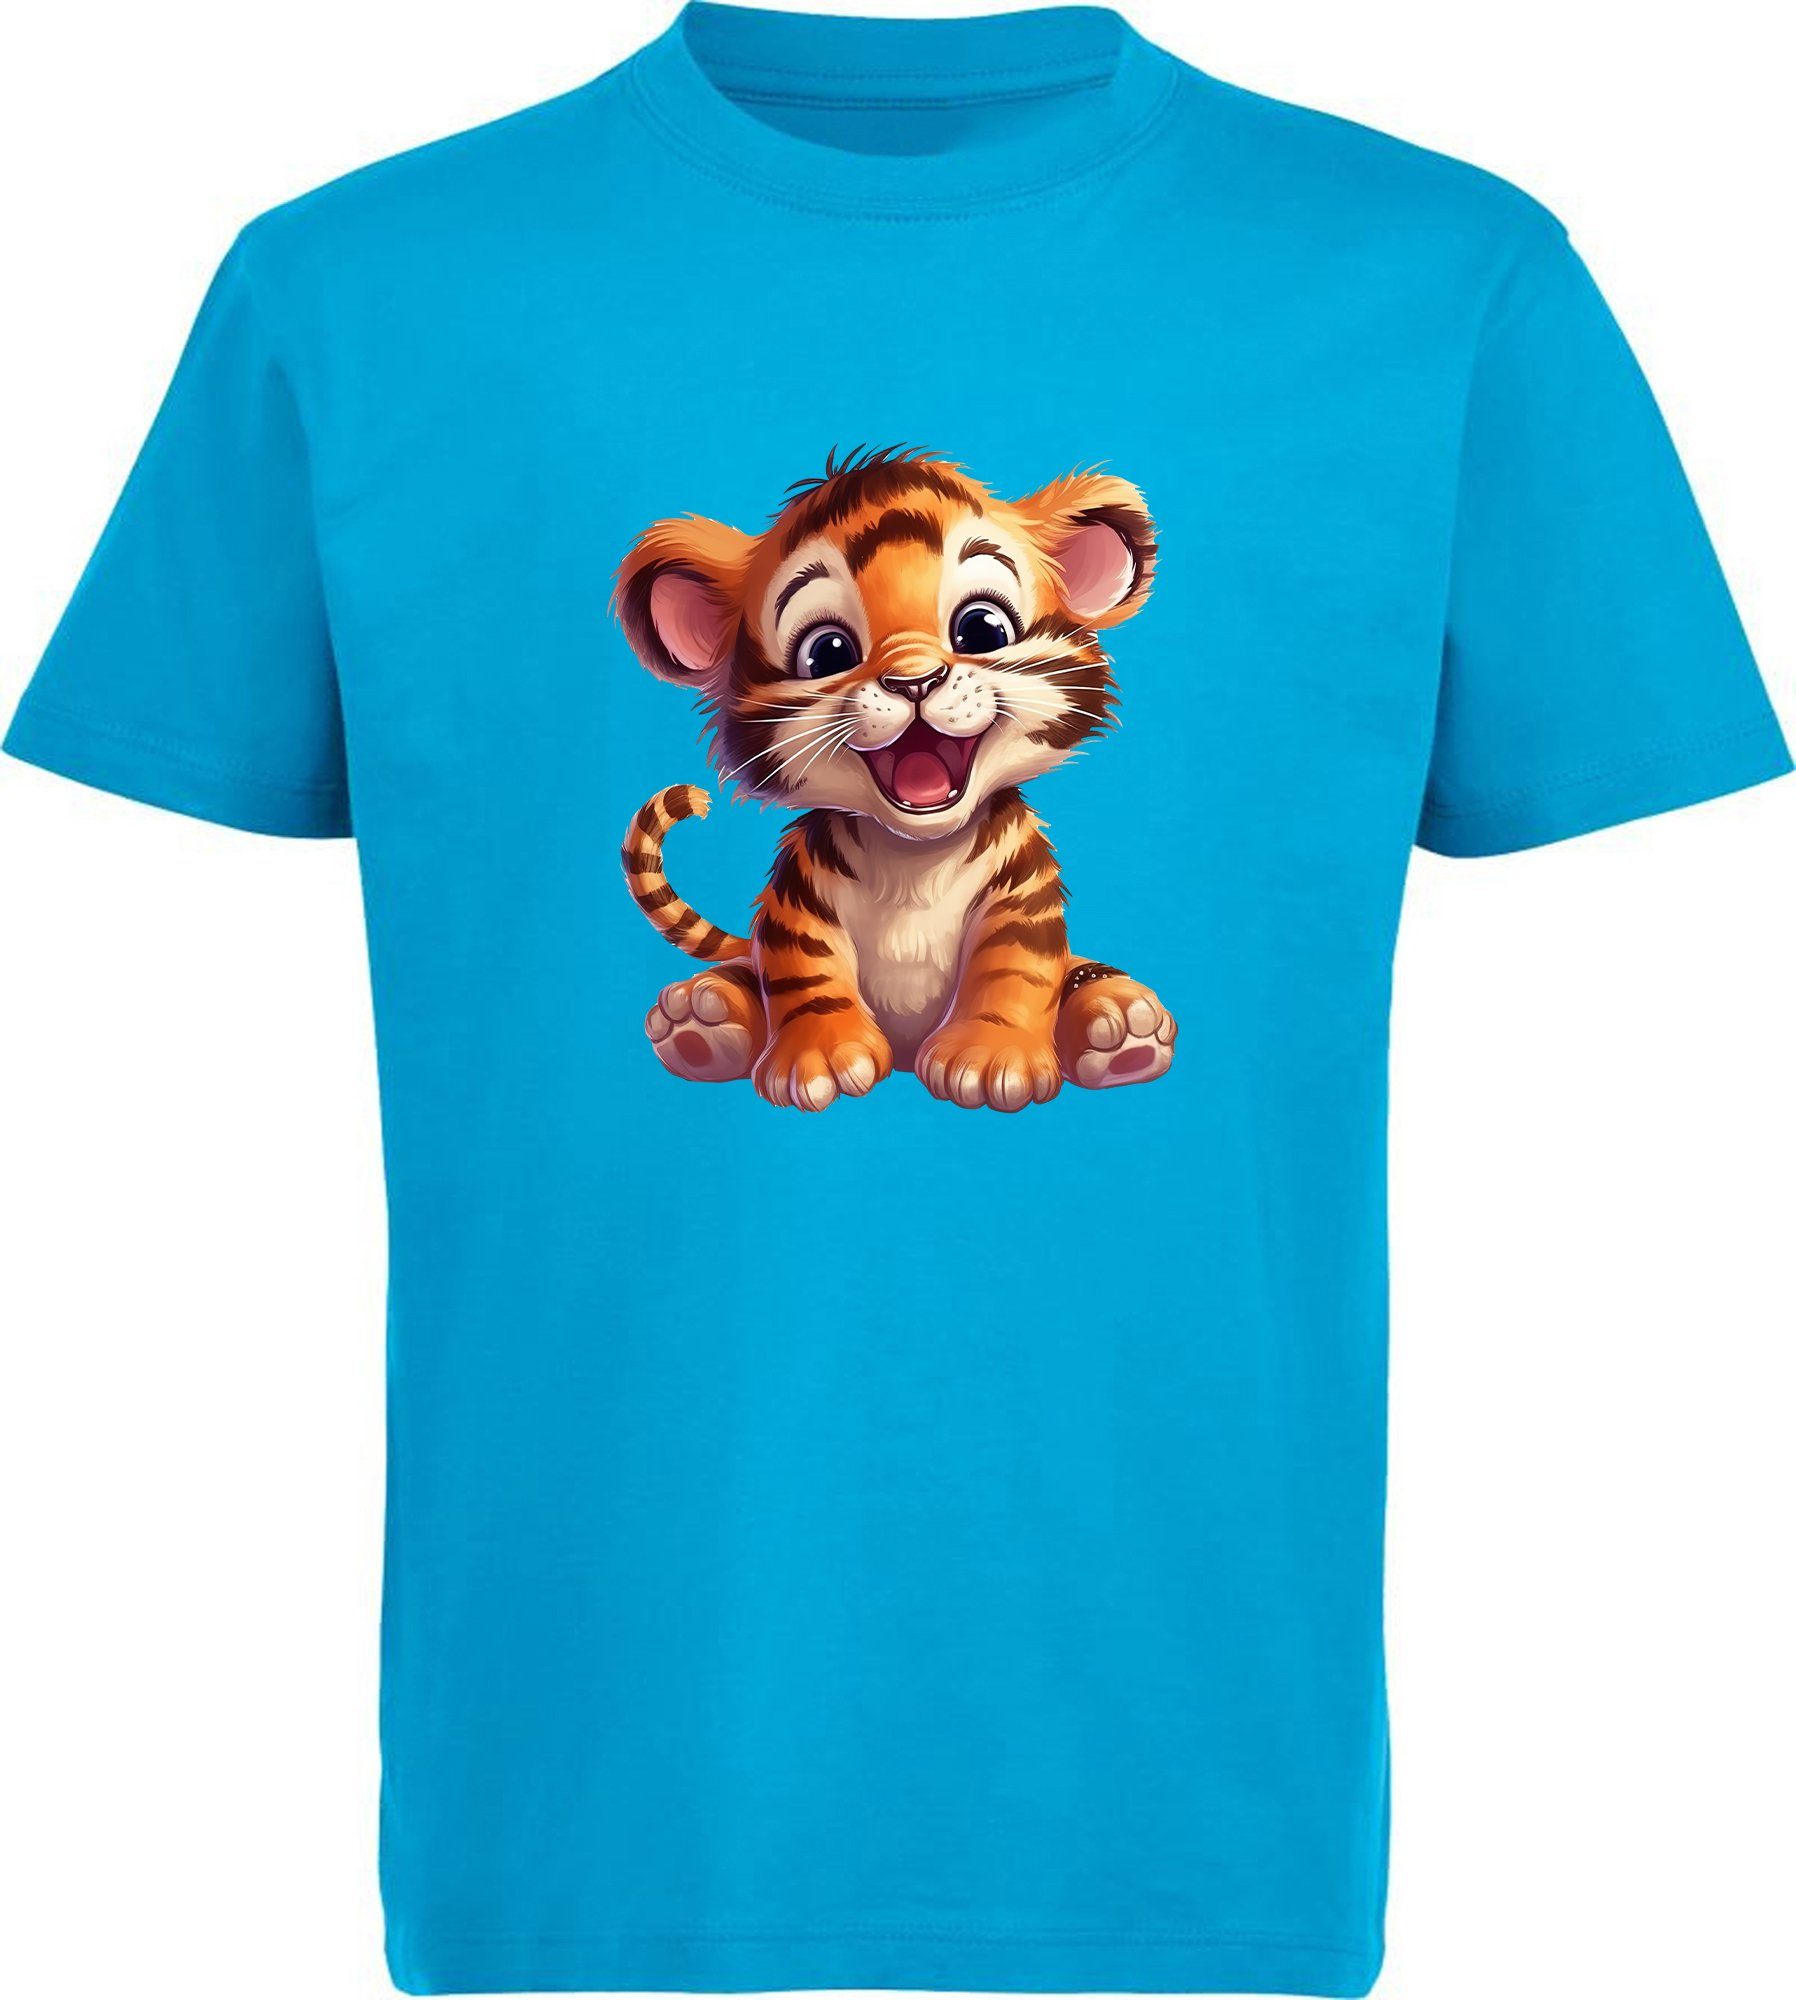 MyDesign24 T-Shirt Kinder Wildtier Print Shirt bedruckt - Baby Tiger Baumwollshirt mit Aufdruck, i266 aqua blau